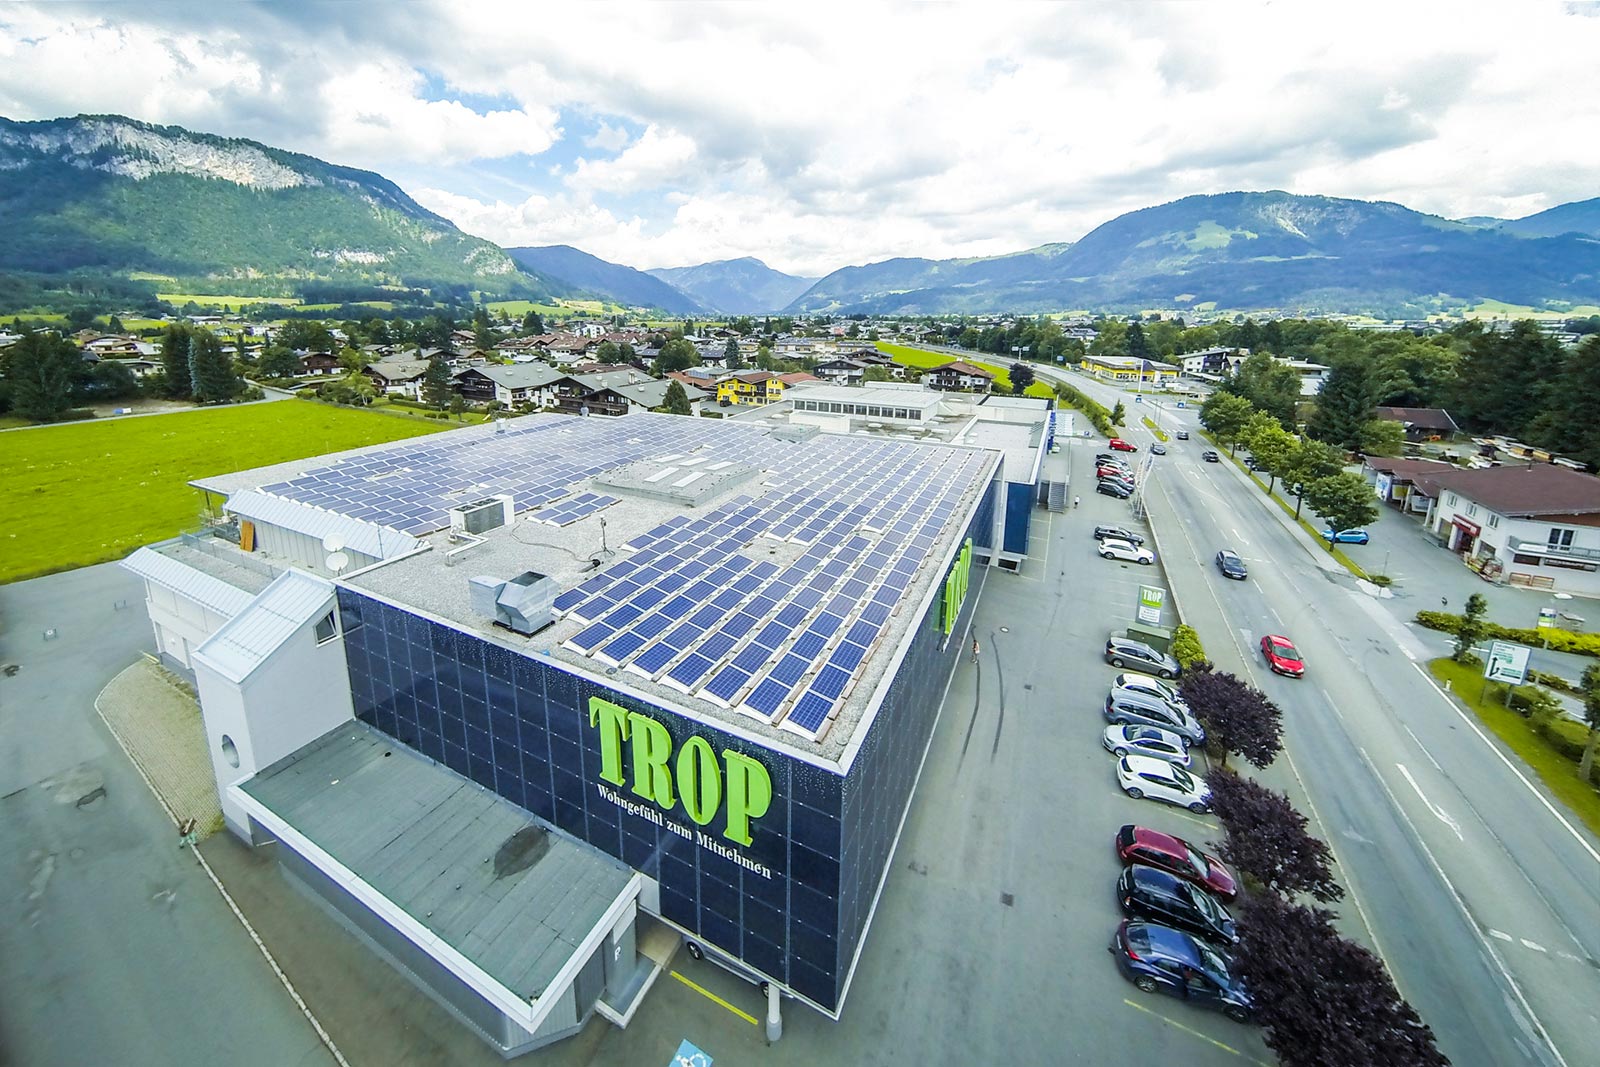 Photovoltaikanlage Trop St. Johann - Tirol